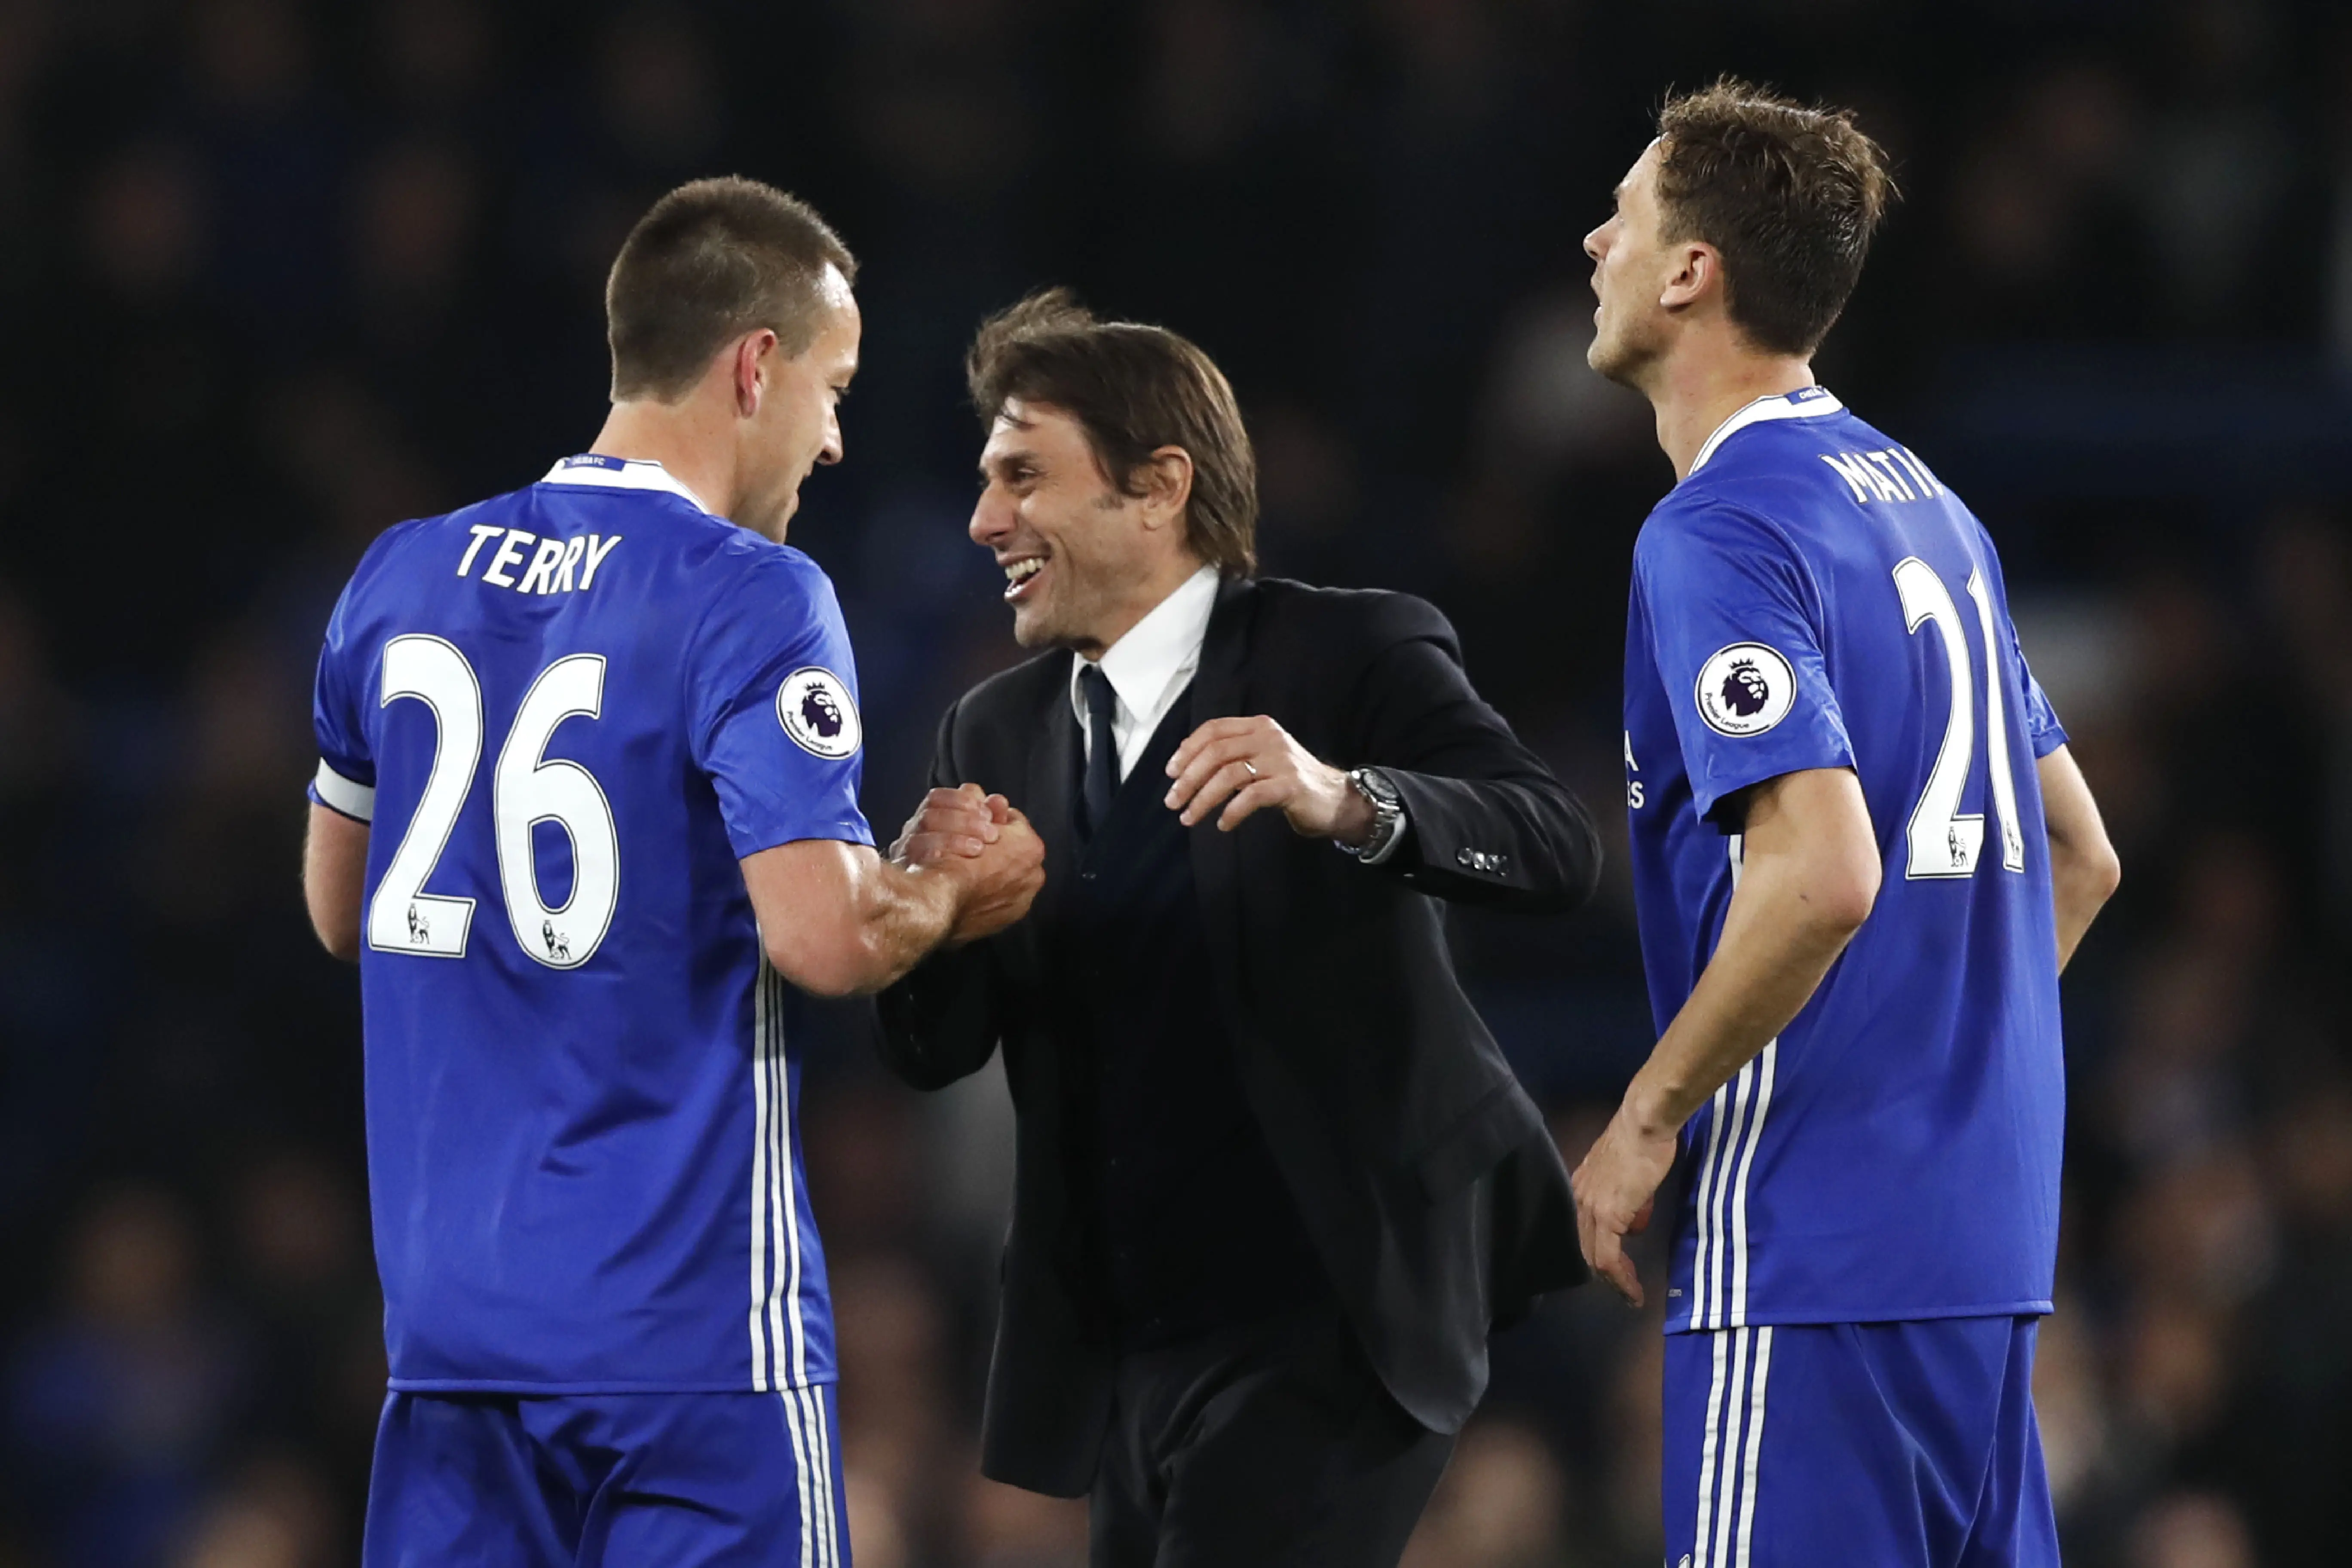 Selebrasi pelatih Chelsea Antonio Conte bersama John Terry dan Nemanja Matic usai menang 3-0 atas Bournemouth pada pekan ke-36 Liga Inggris. (Adrian DENNIS / AFP)